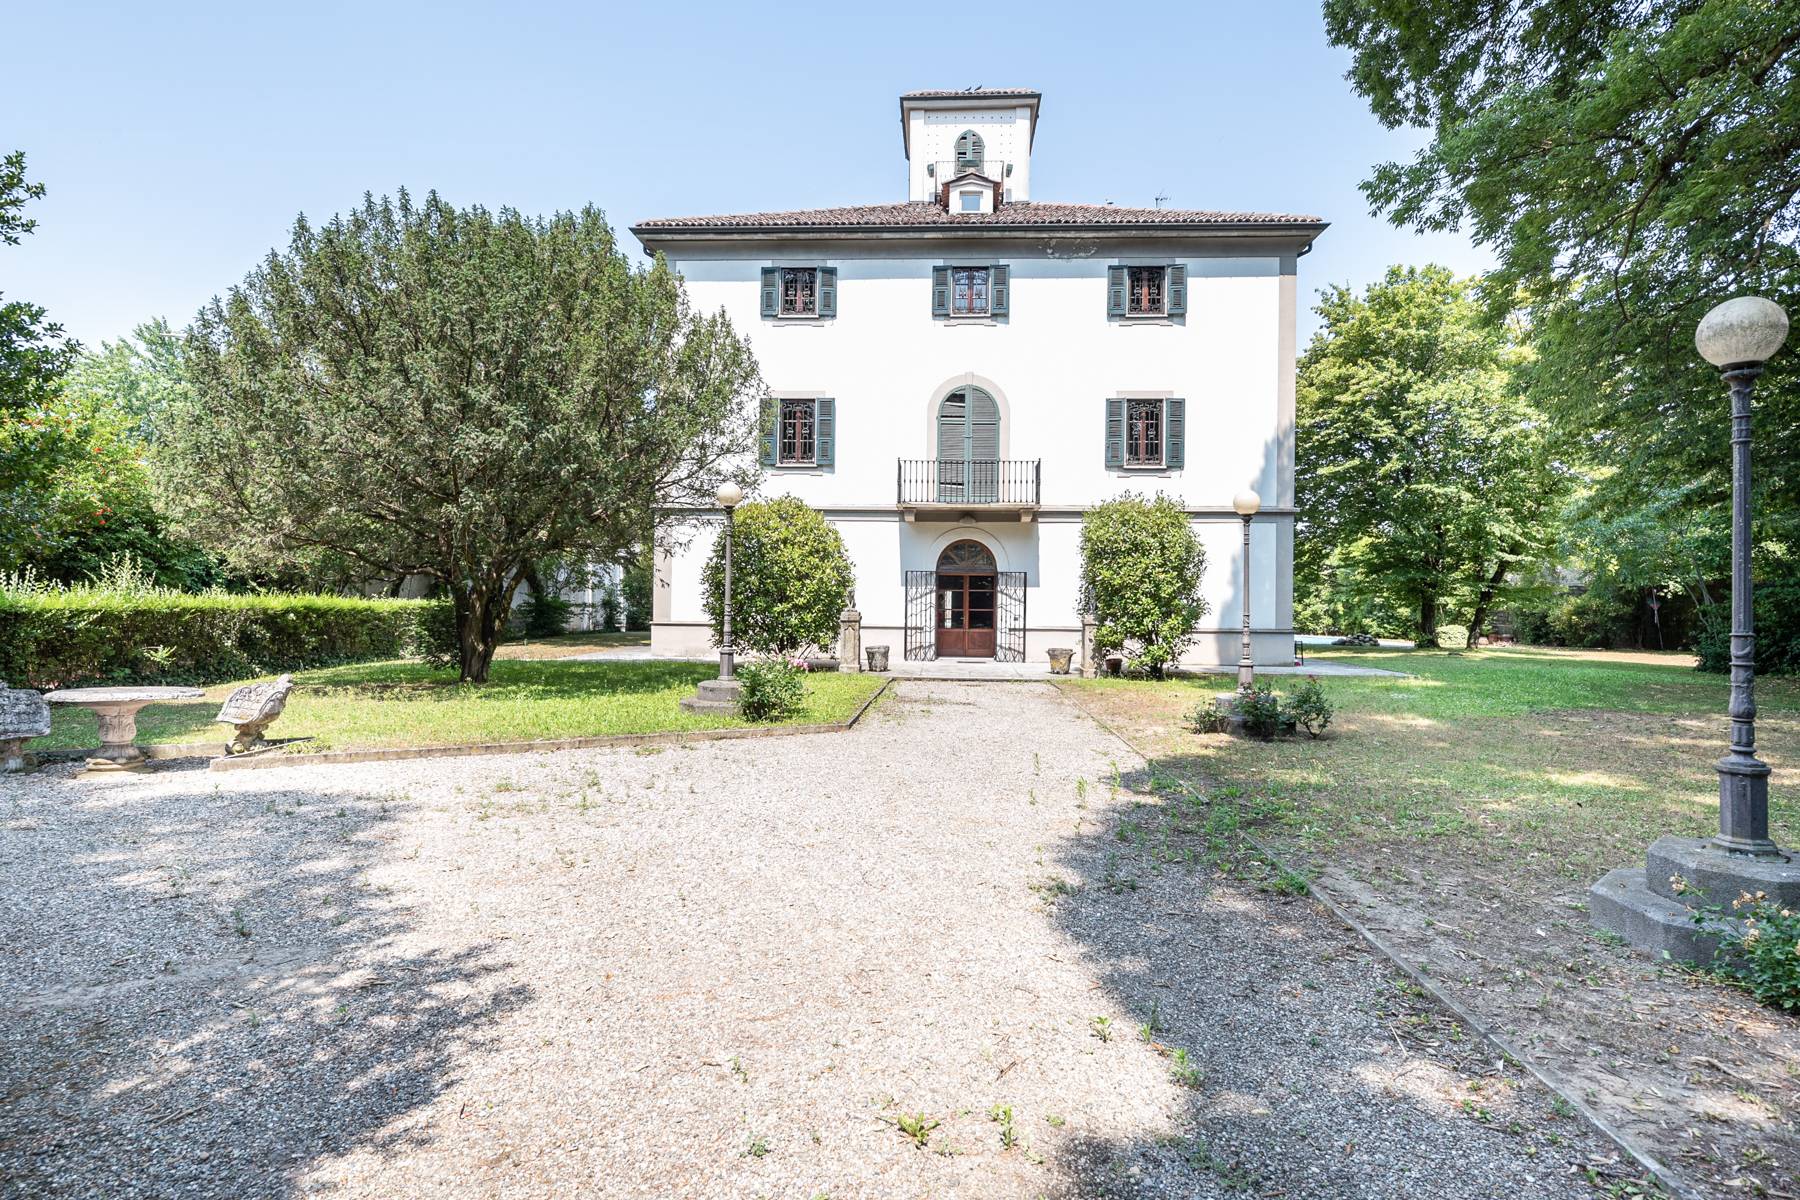 Villa in Vendita a Vigevano: 5 locali, 1000 mq - Foto 21